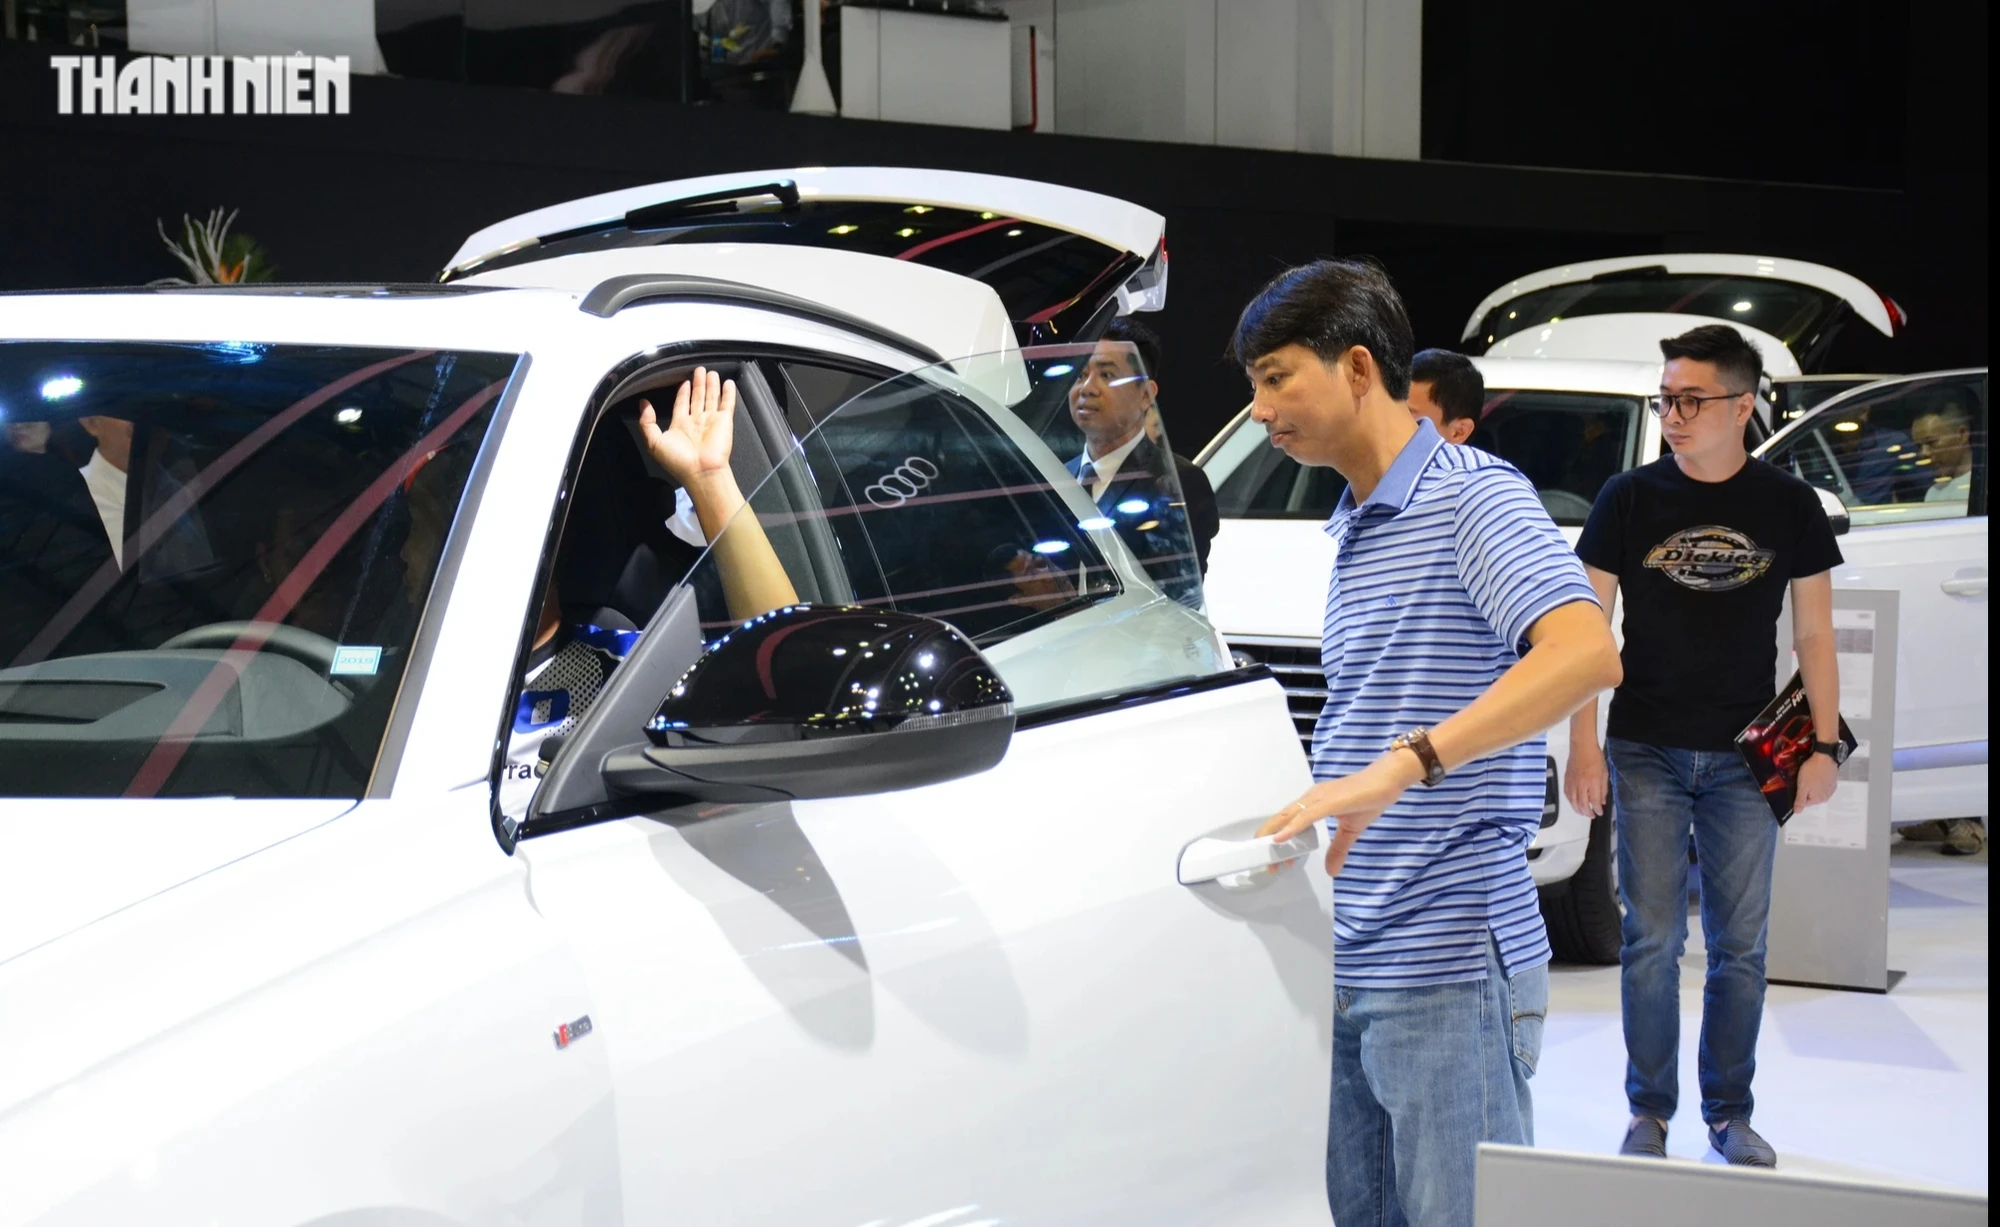 Tiêu thụ ô tô tại Việt Nam giảm 40%, phần lớn người mua chọn xe gầm cao- Ảnh 2.